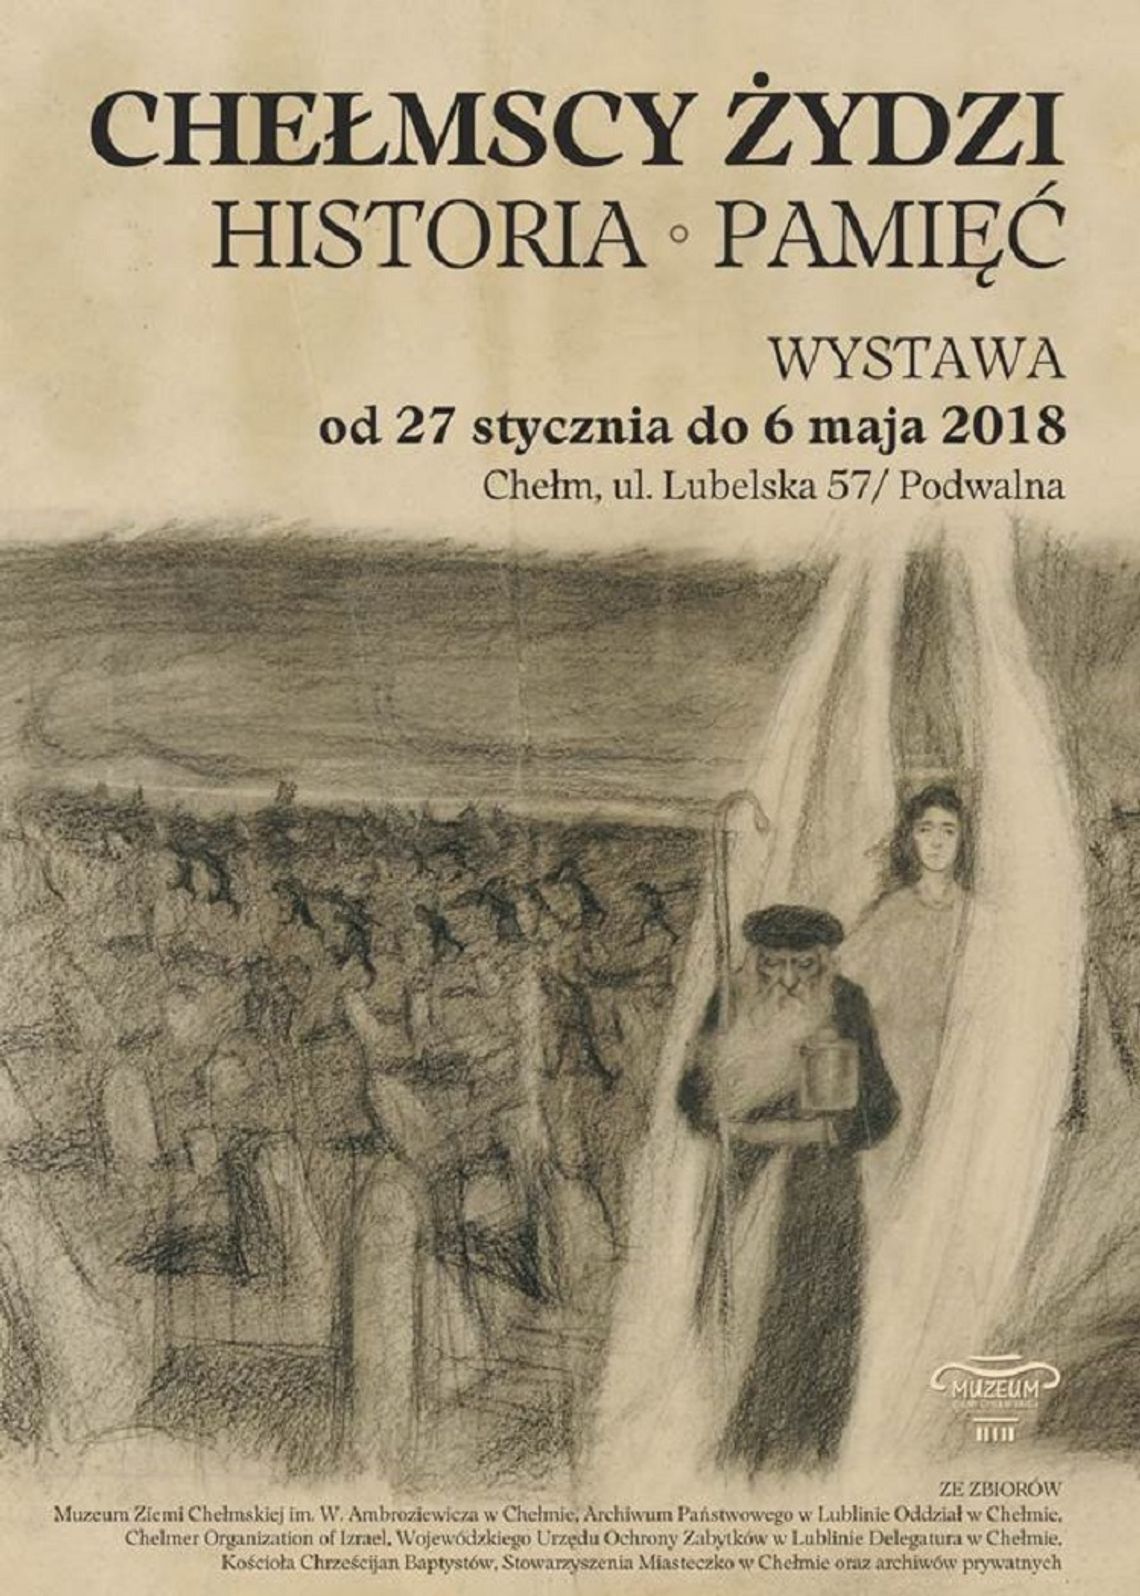 Chełmscy Żydzi - Historia - Pamięć - wystawa w MZCh